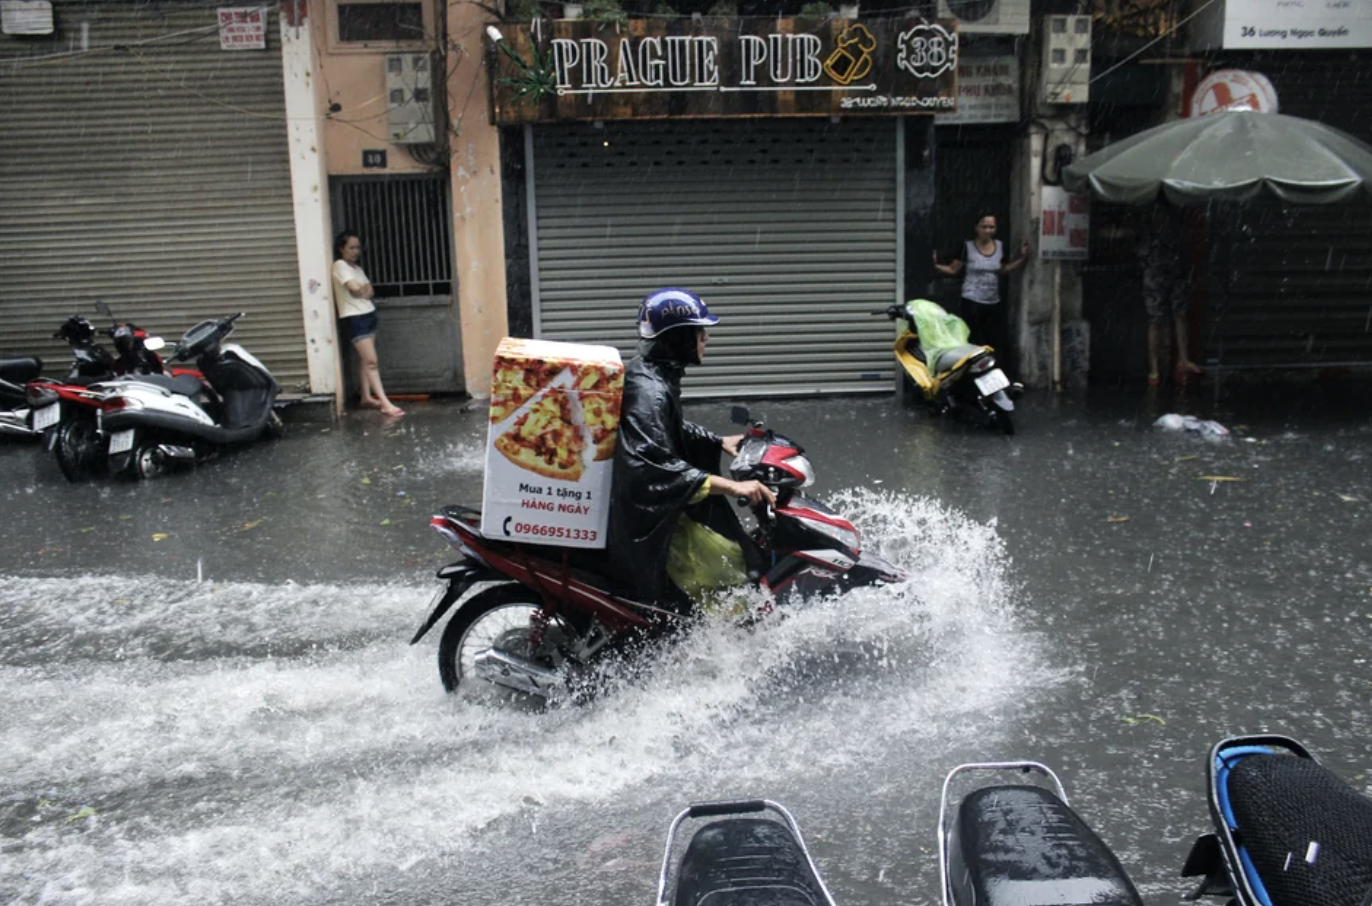 pizza delivery in rain - Prague Pub 0966951333